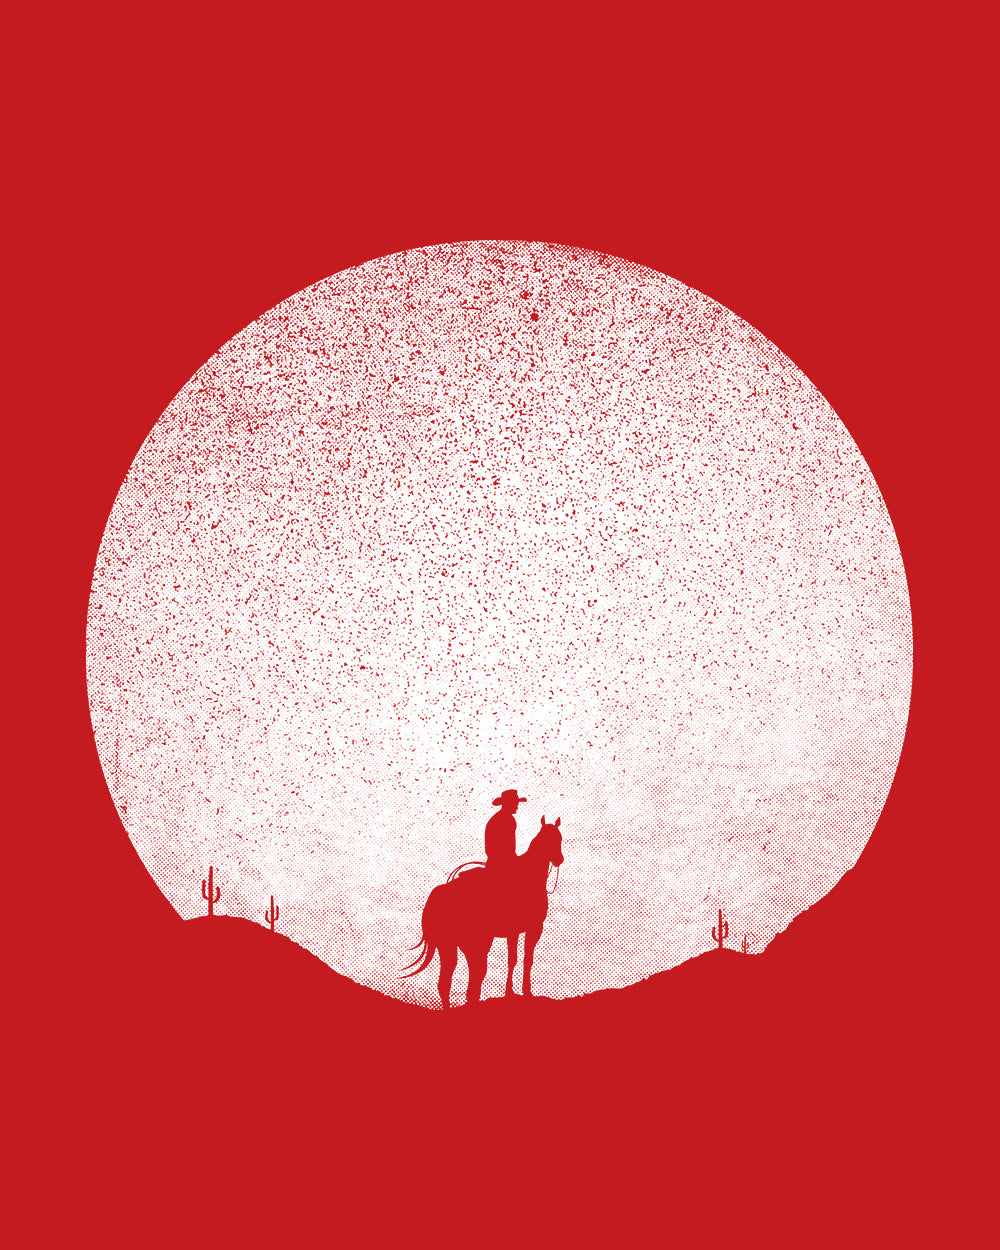 Rising Sunset Kids T-Shirt Australia Online #colour_red